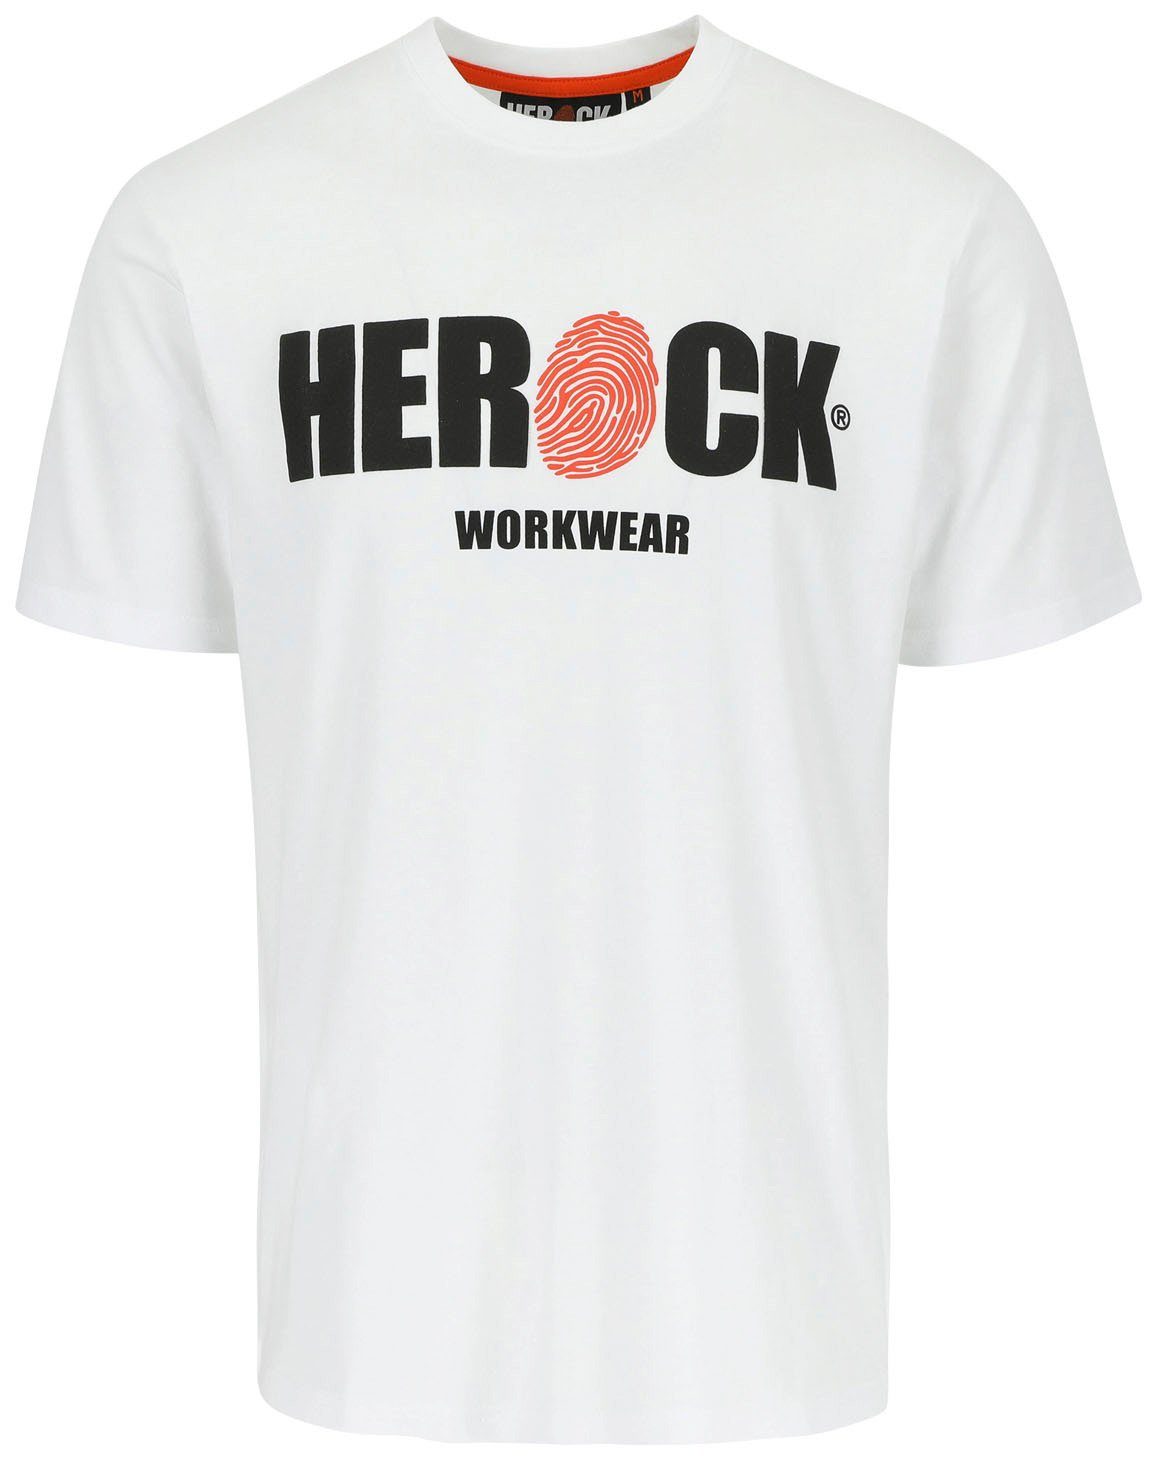 Herock T-Shirt ENI Baumwolle, Rundhals, mit Herock®-Aufdruck, angenehmes Tragegefühl weiß | T-Shirts